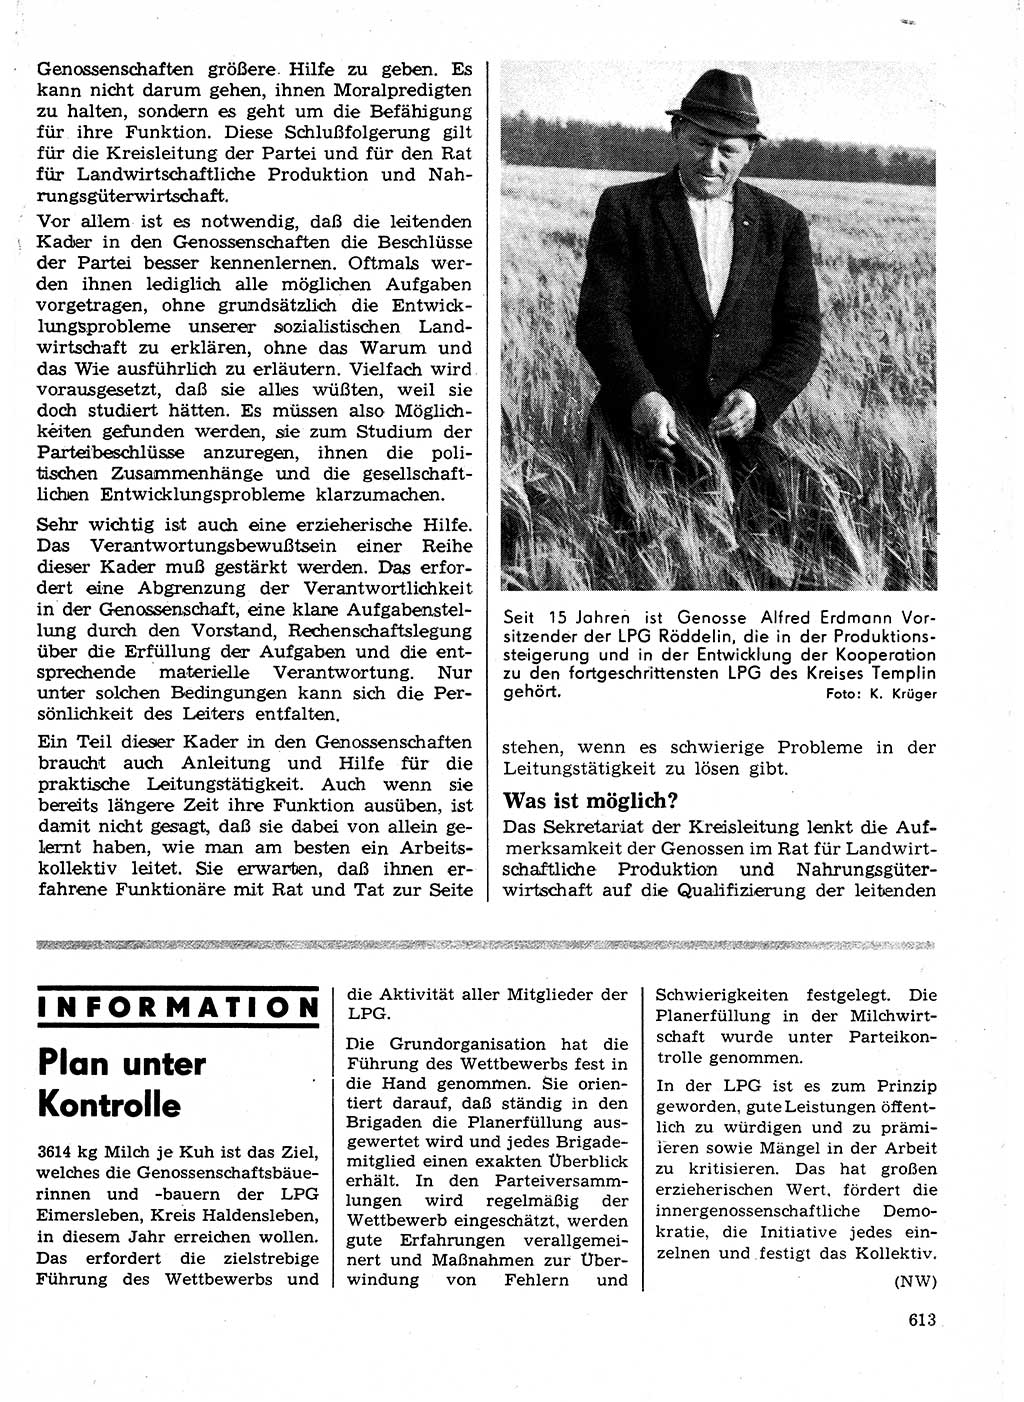 Neuer Weg (NW), Organ des Zentralkomitees (ZK) der SED (Sozialistische Einheitspartei Deutschlands) für Fragen des Parteilebens, 24. Jahrgang [Deutsche Demokratische Republik (DDR)] 1969, Seite 613 (NW ZK SED DDR 1969, S. 613)